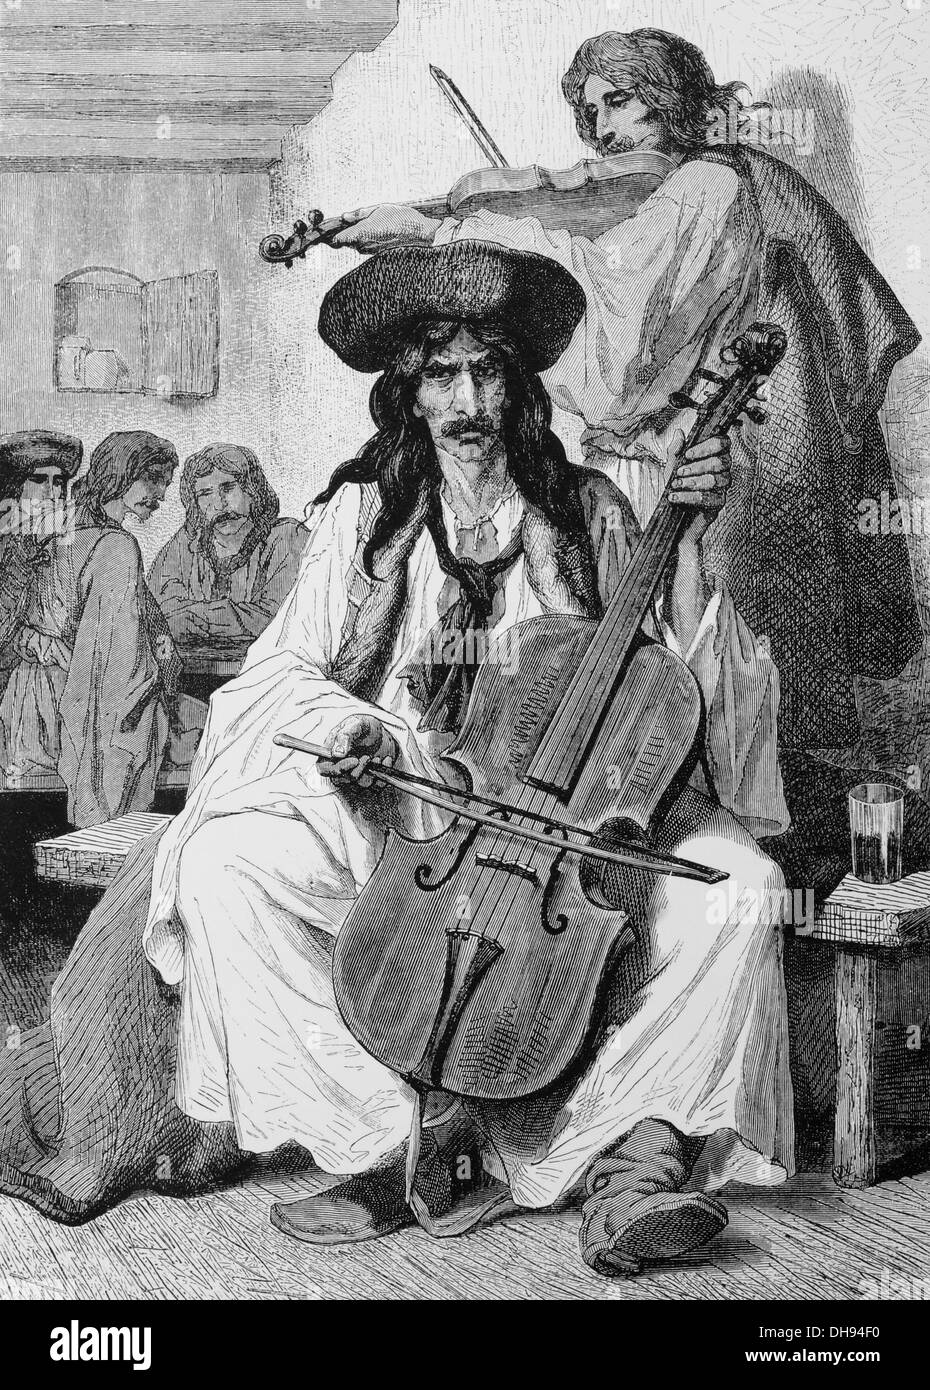 L'Europe. Musican tzigane en Hongrie. 1800-1900. La gravure. 19e siècle. Banque D'Images